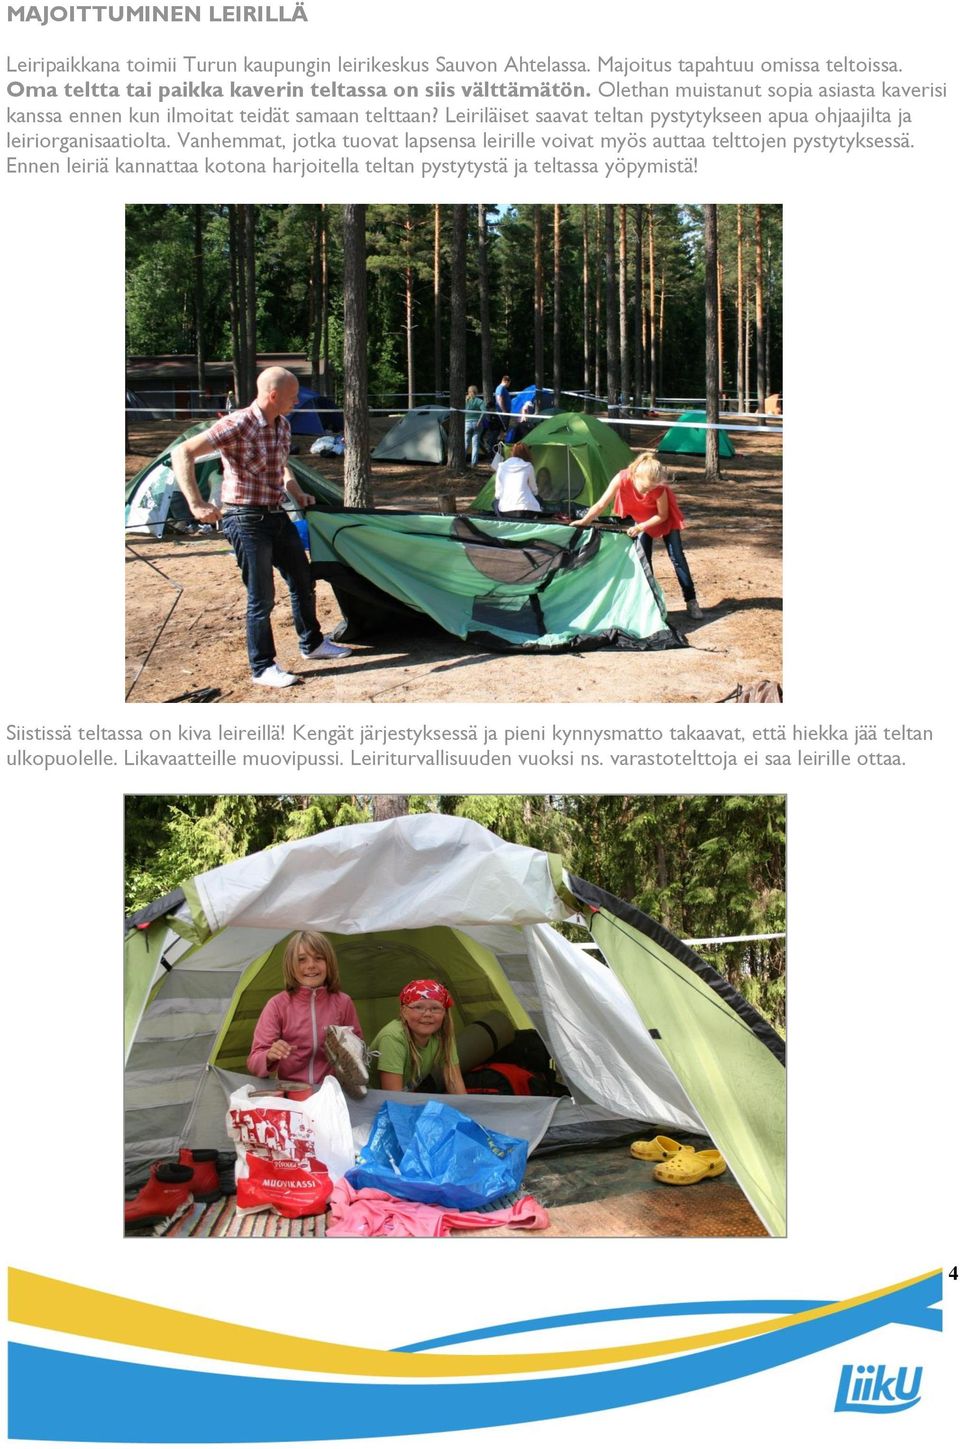 Vanhemmat, jotka tuovat lapsensa leirille voivat myös auttaa telttojen pystytyksessä. Ennen leiriä kannattaa kotona harjoitella teltan pystytystä ja teltassa yöpymistä!